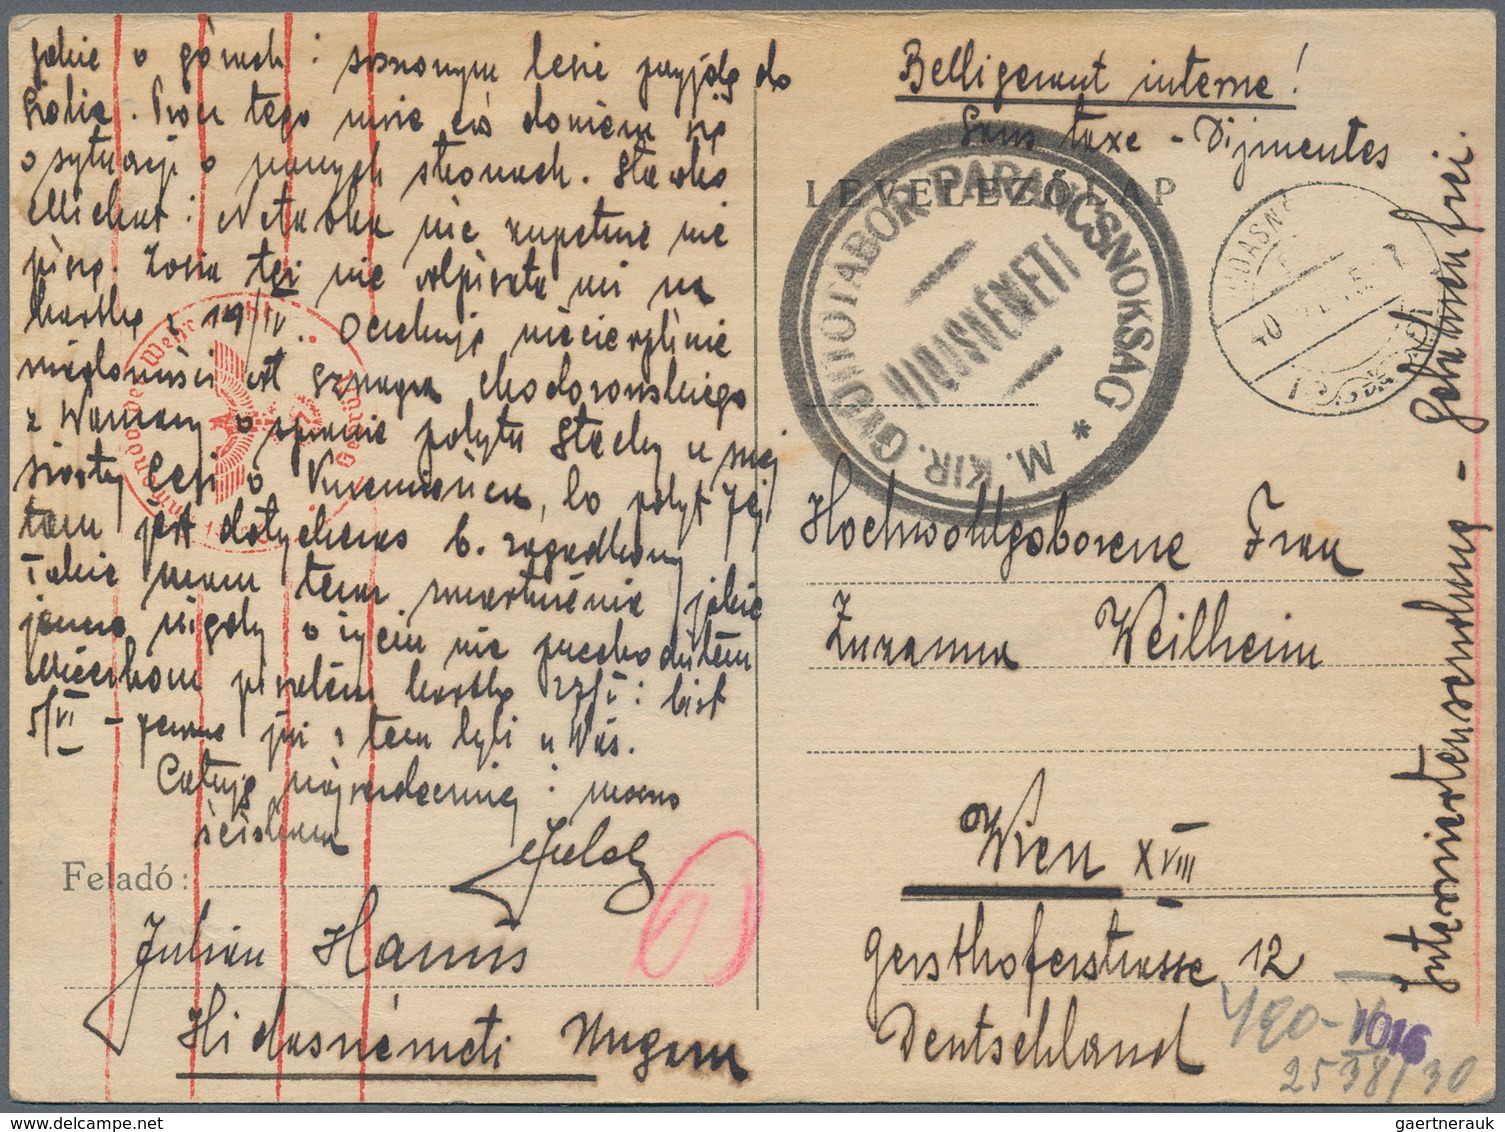 Kriegsgefangenen-Lagerpost: 1940/1943, sechs gebührenfreie Karten (1x Vordruck, polnischer Internier